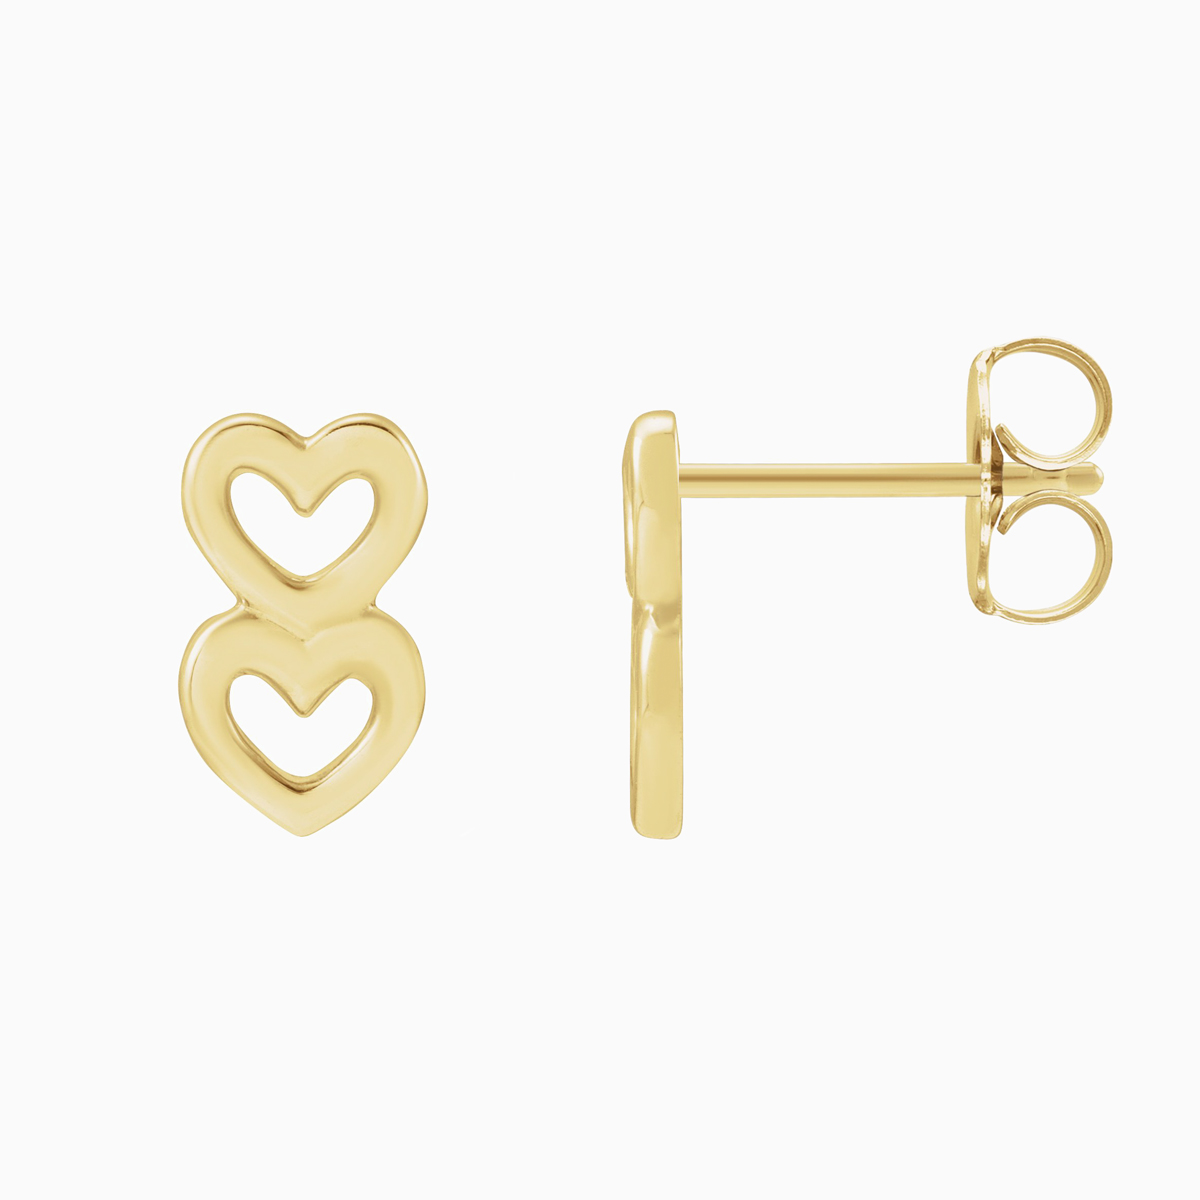 Double Hearts Earrings, 14k Yellow Gold